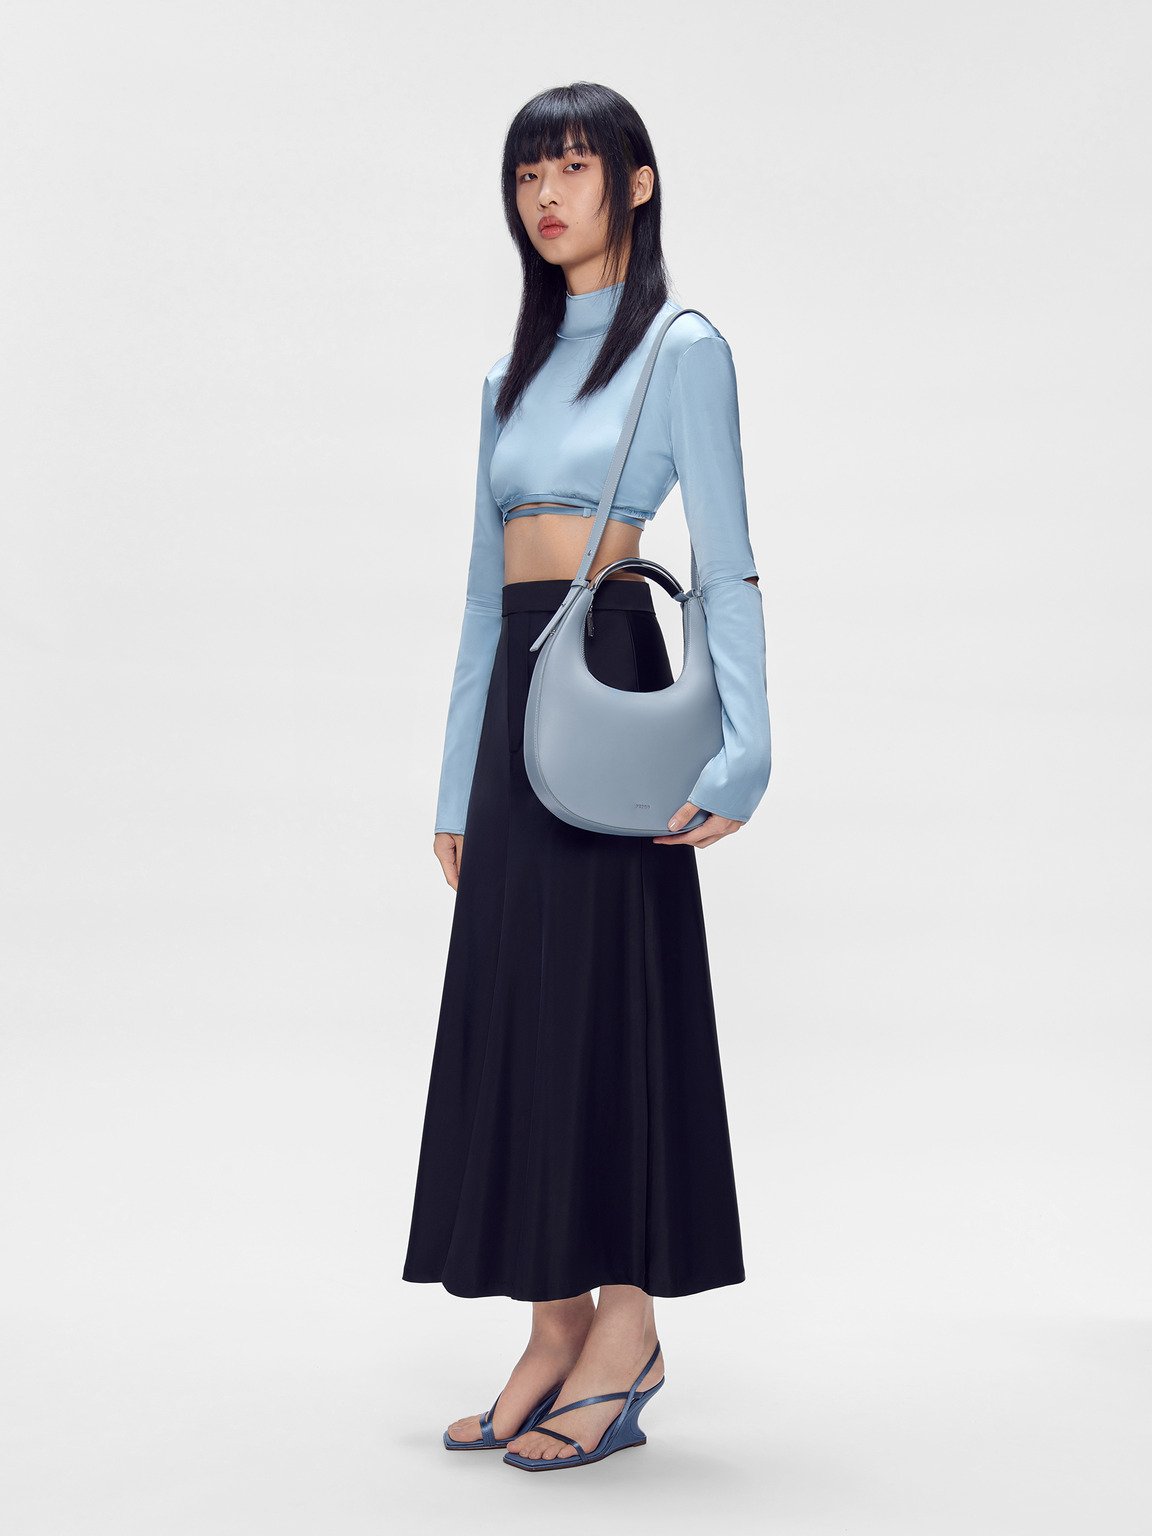 Lia Hobo Bag, Slate Blue